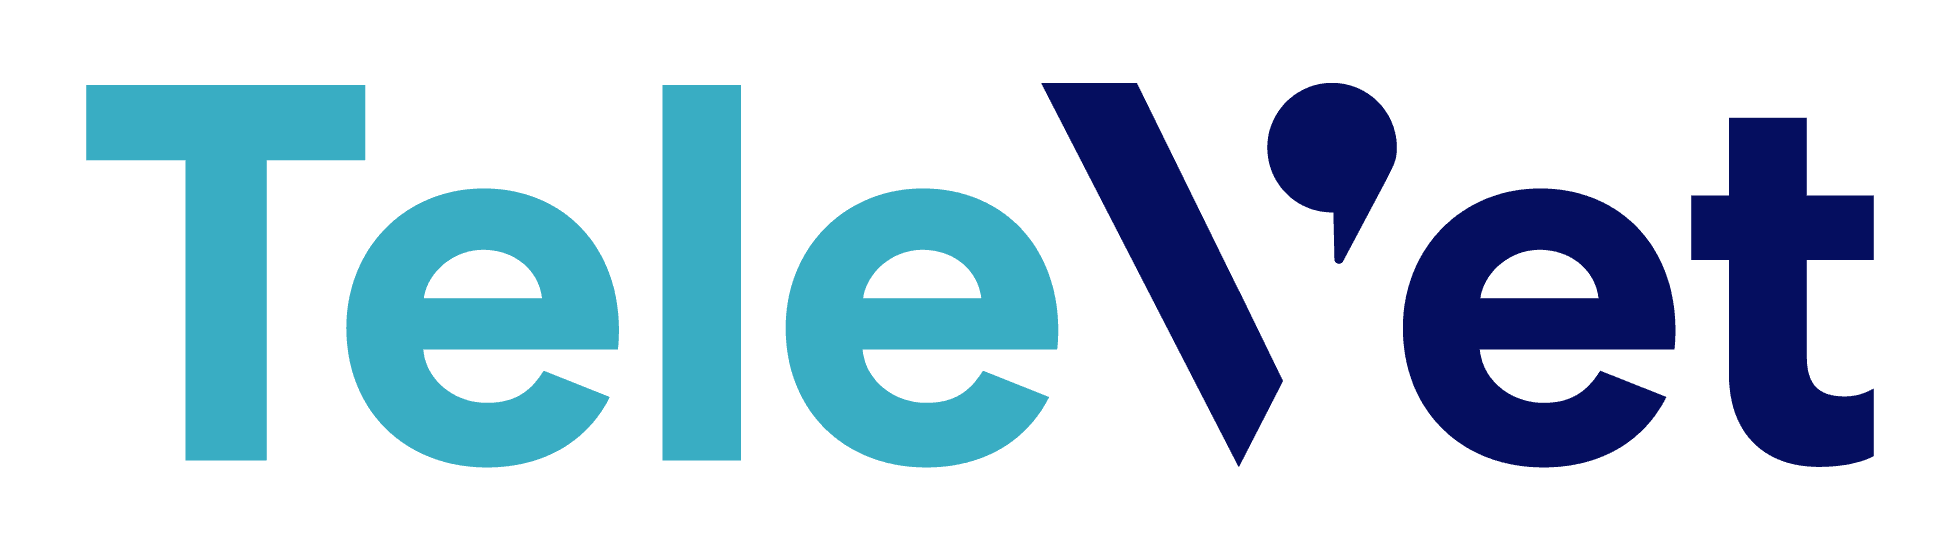 TeleVet logo